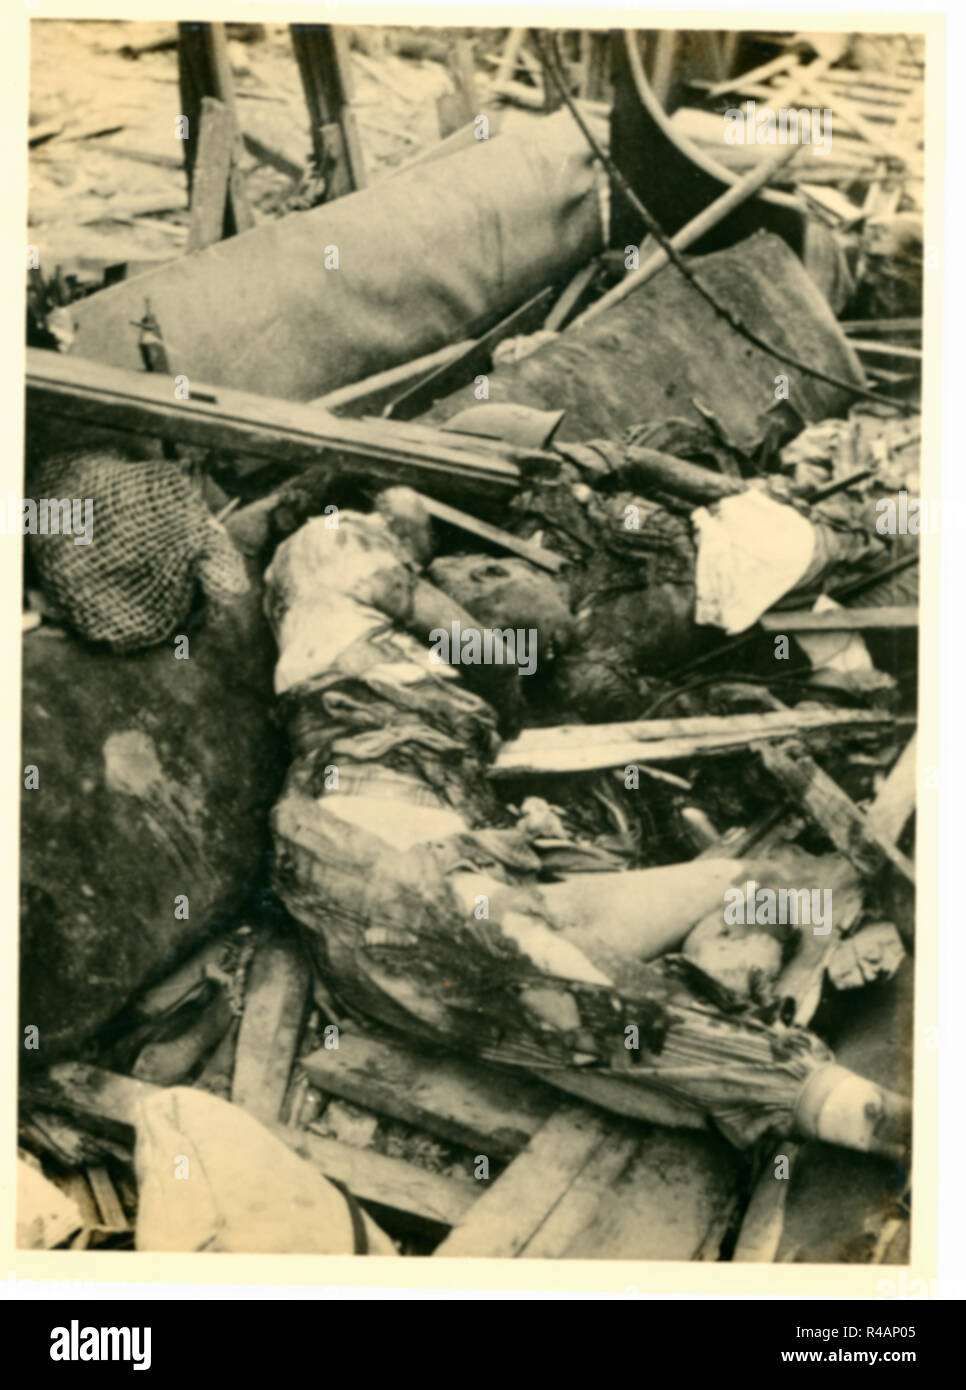 Cadavre corpse victimes du bombardement atomique en ruines dévastées wasteland, Hiroshima, Japon, 1945 Banque D'Images